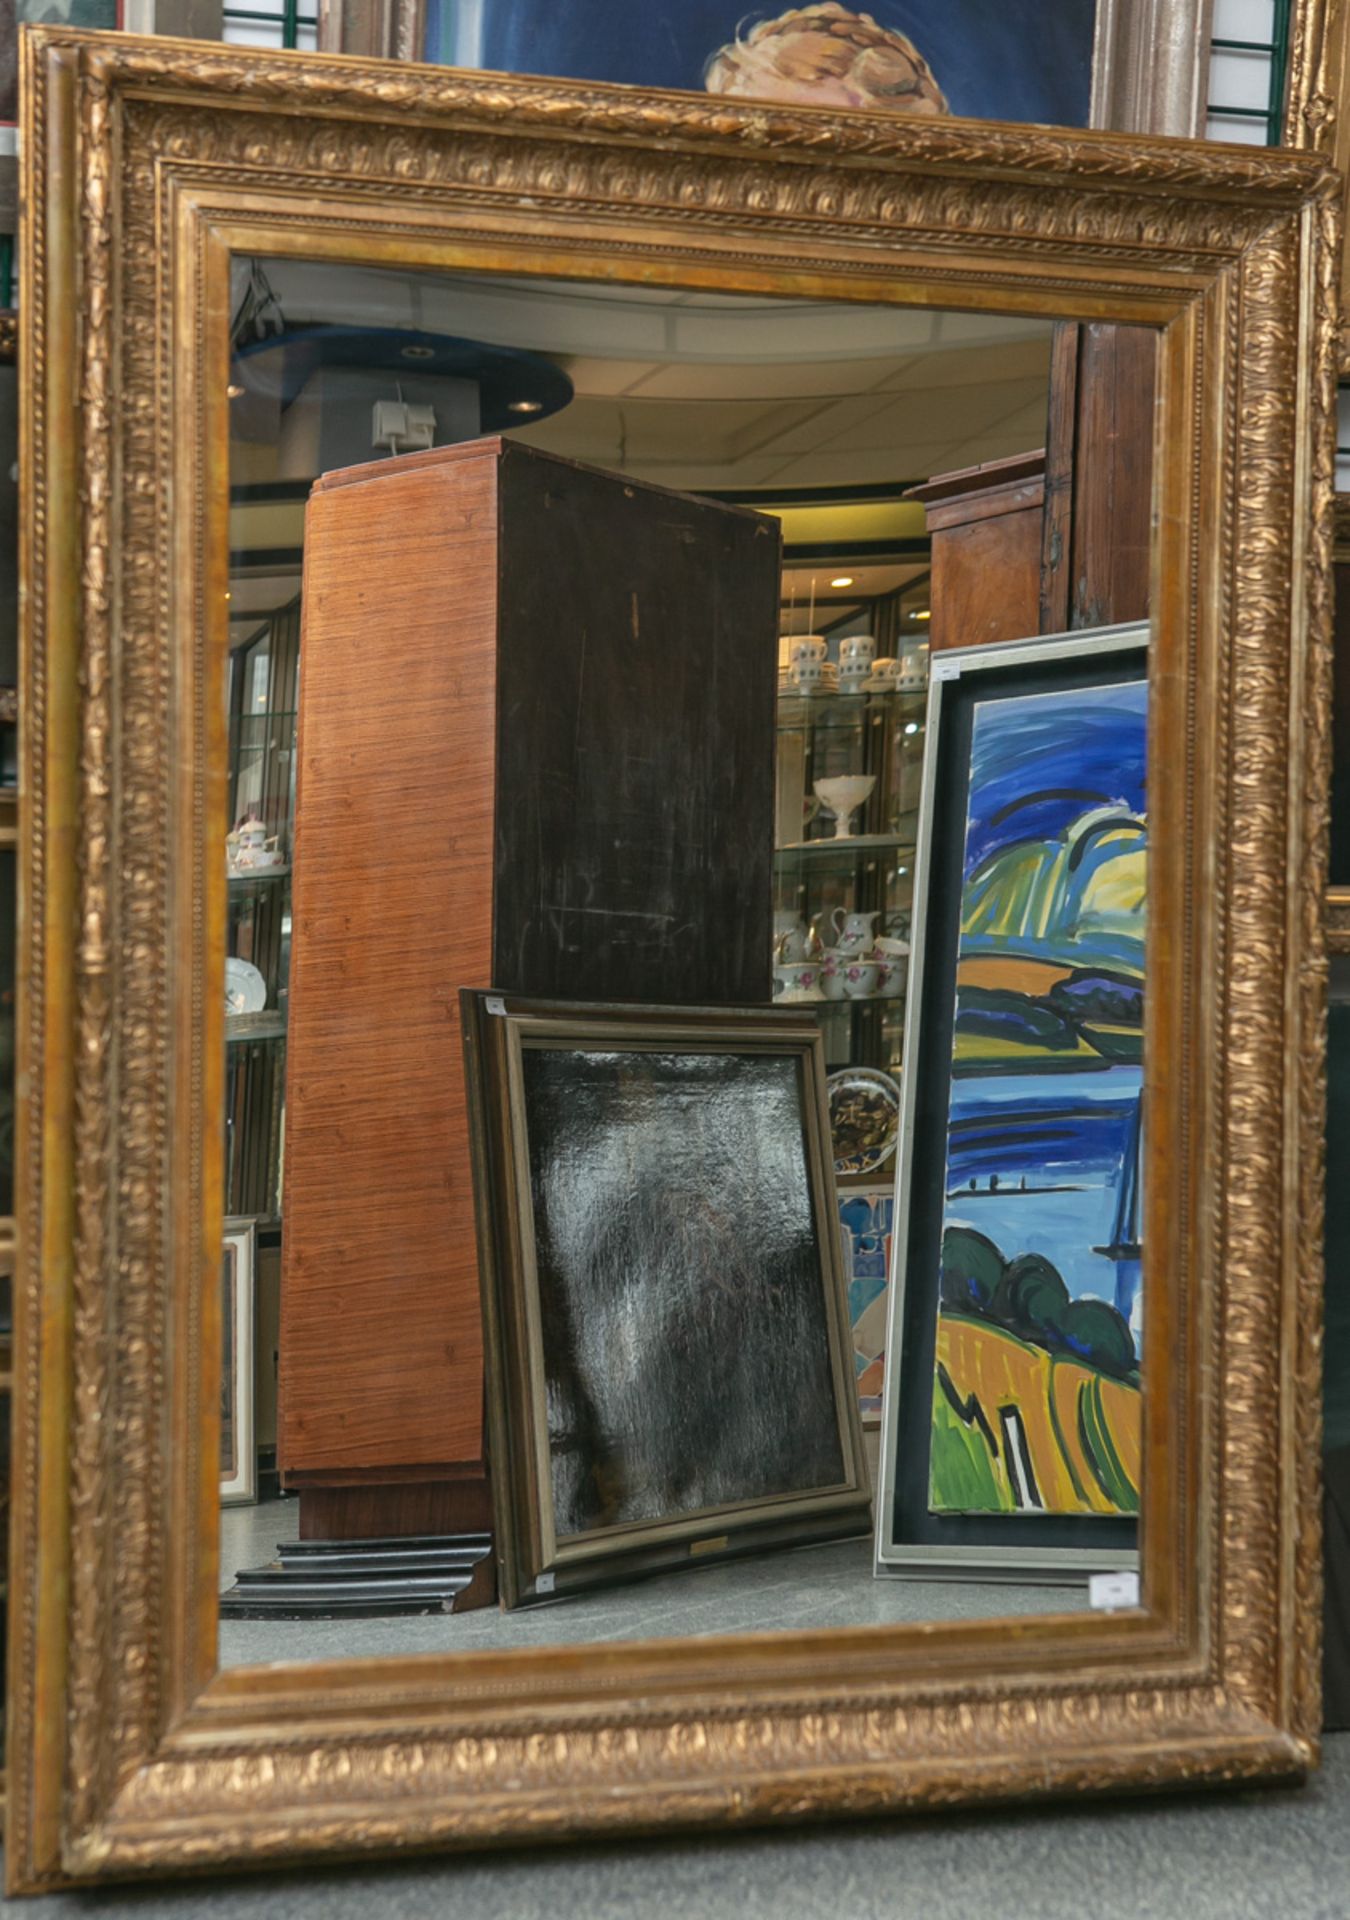 Spiegel in einer alten Gemälderahmung - Bild 2 aus 2